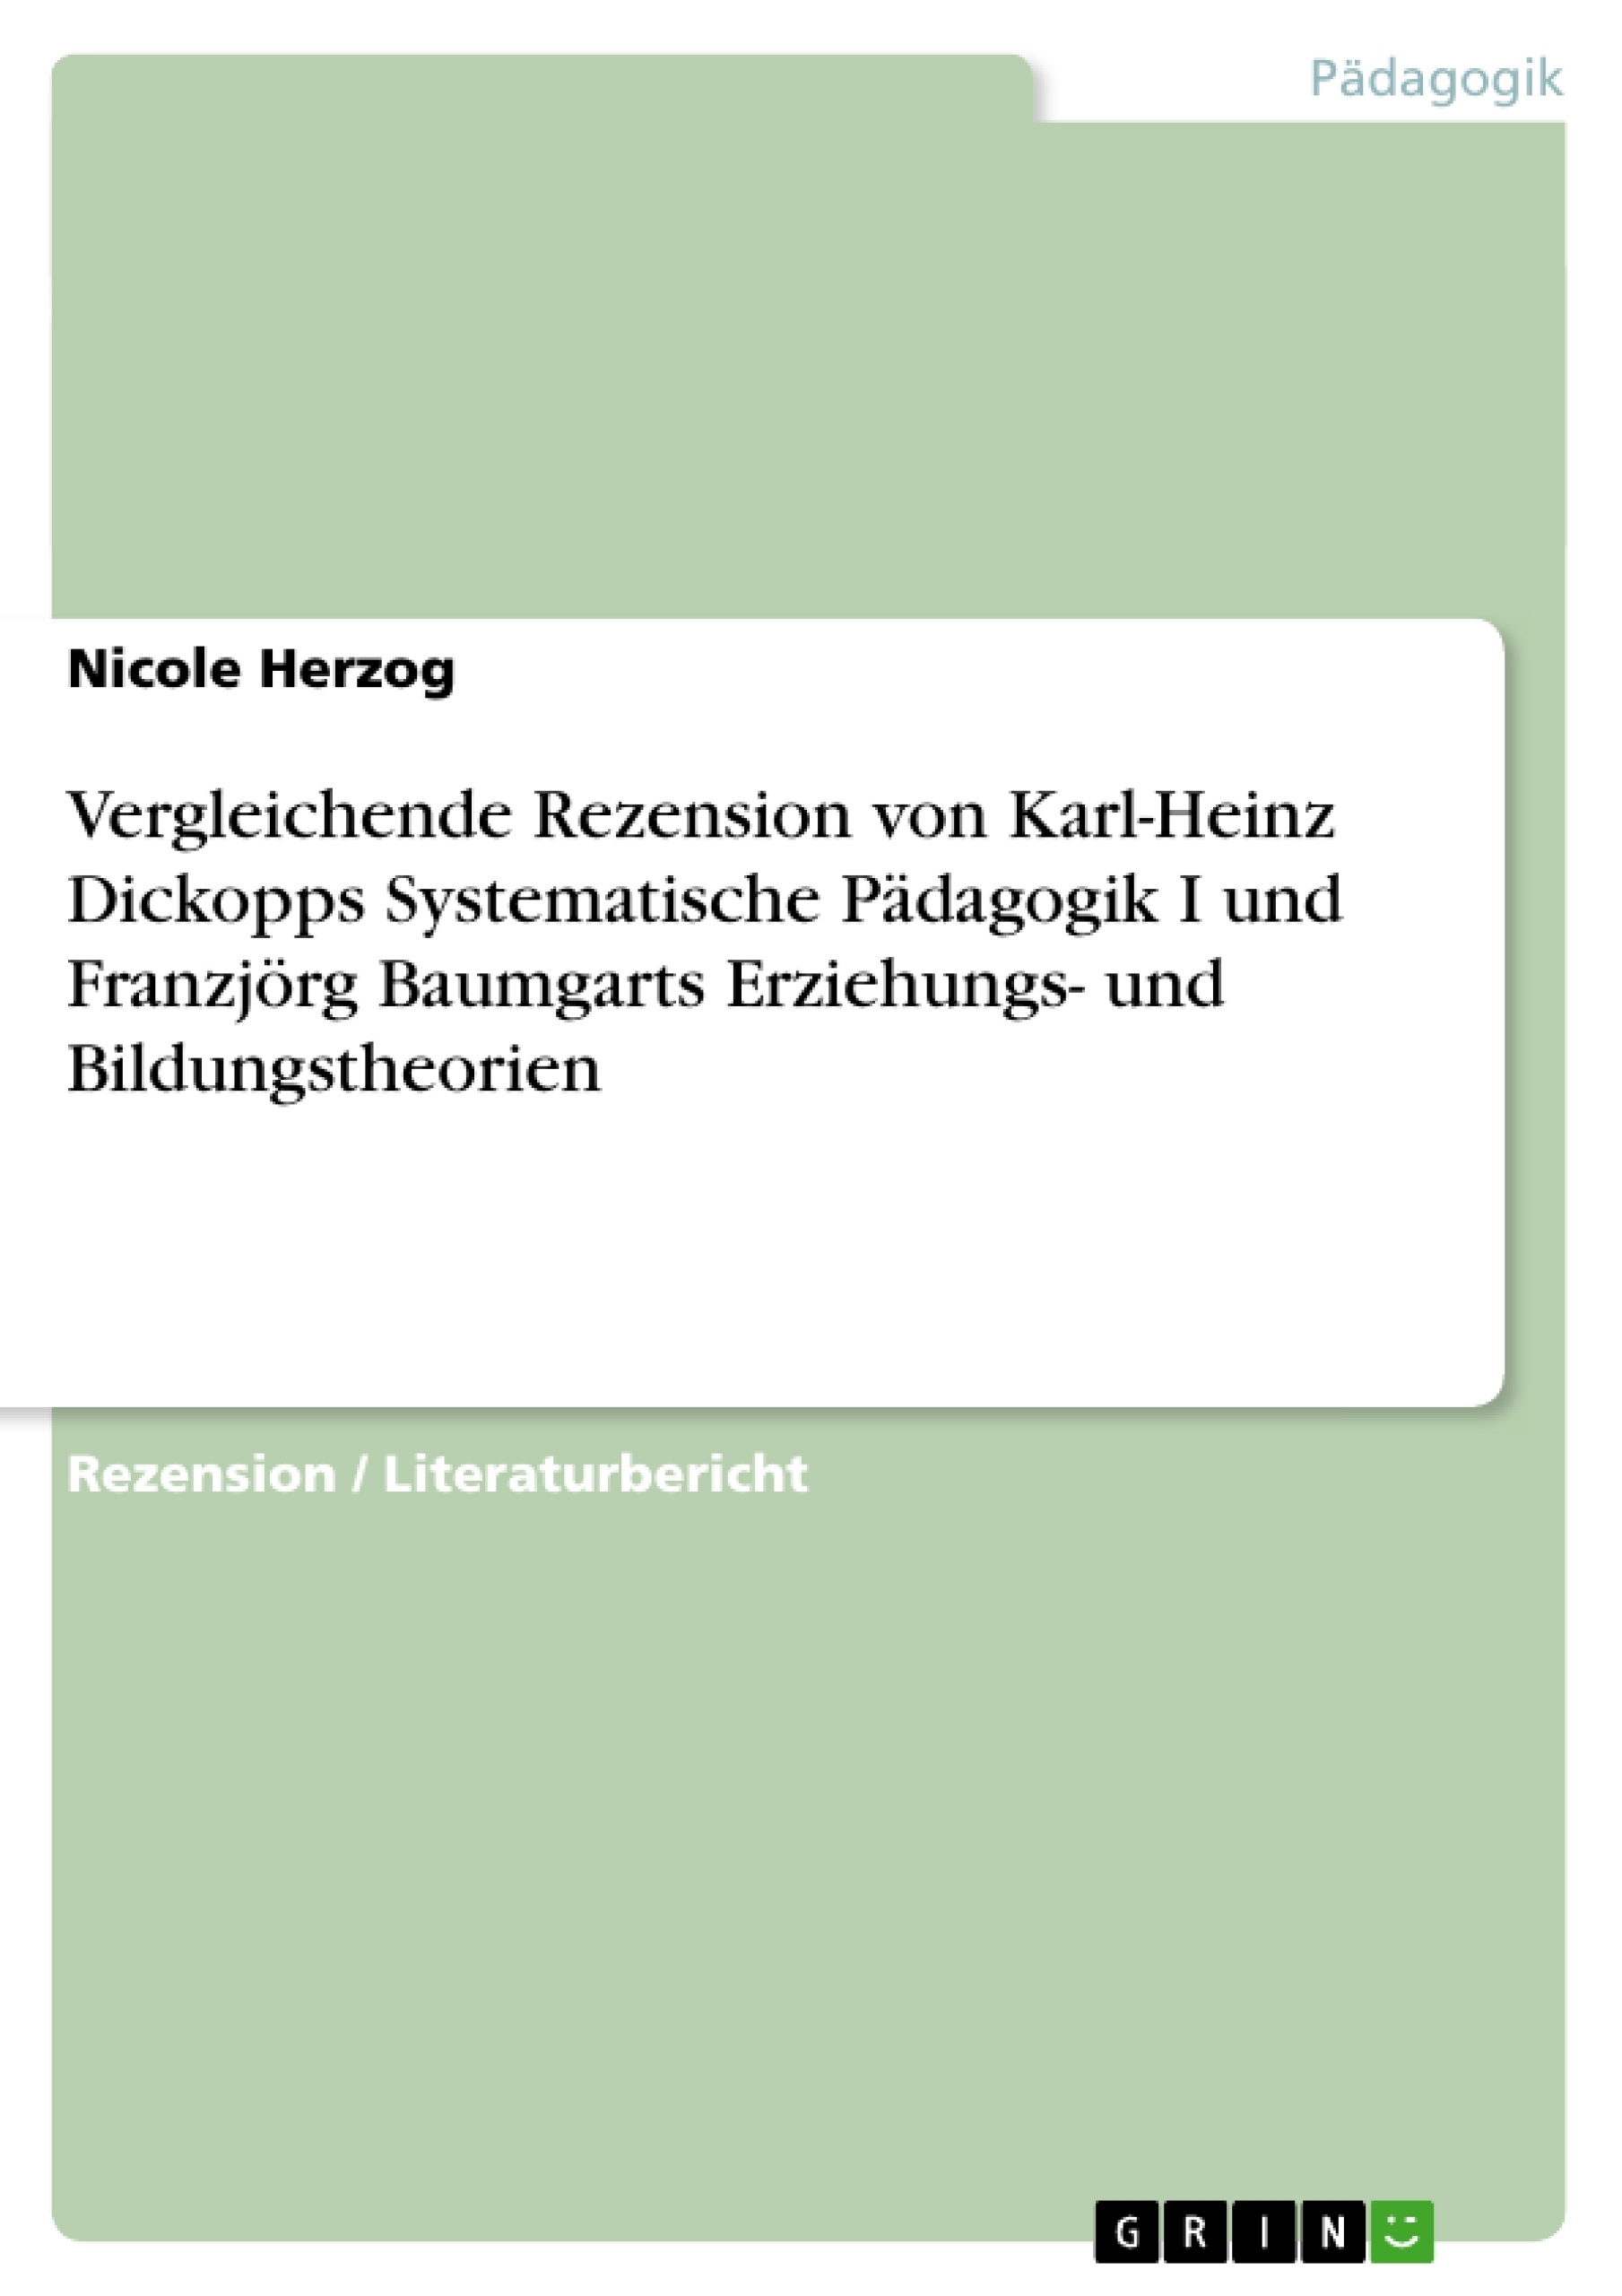 Title: Vergleichende Rezension von Karl-Heinz Dickopps Systematische Pädagogik I und Franzjörg Baumgarts Erziehungs- und Bildungstheorien